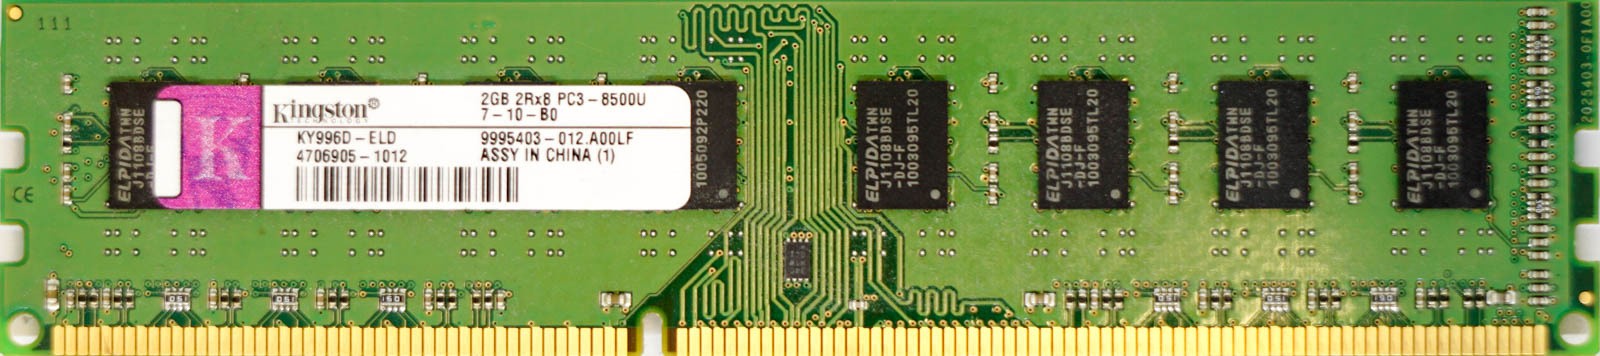 2GB PC3-8500U (DDR3-1066Mhz, 2RX8)